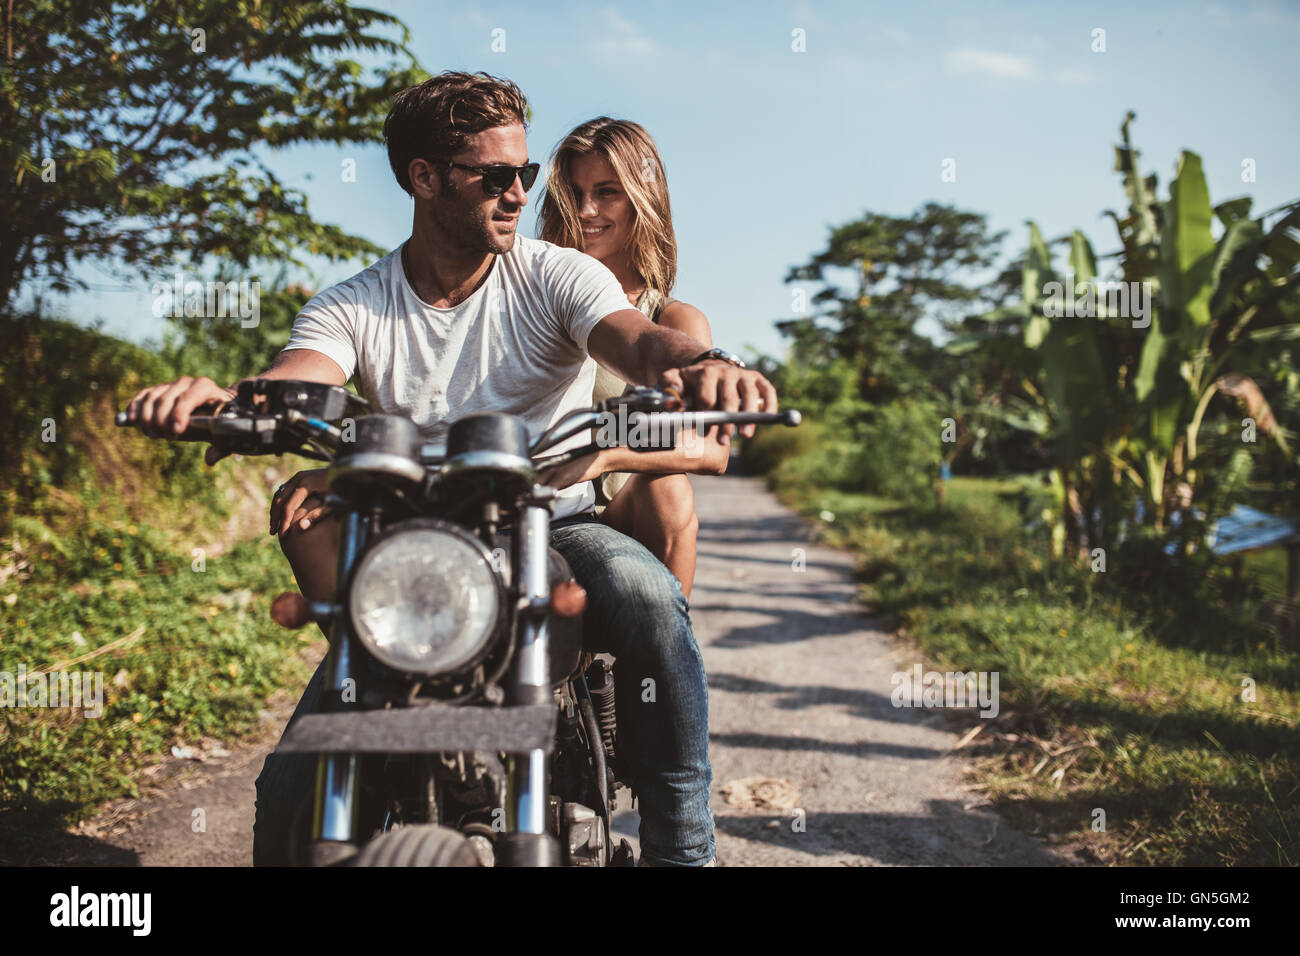 Aufnahme des jungen Paares auf dem Motorrad. Mann reitet auf einem Motorrad mit Freundin auf Landstraße. Stockfoto